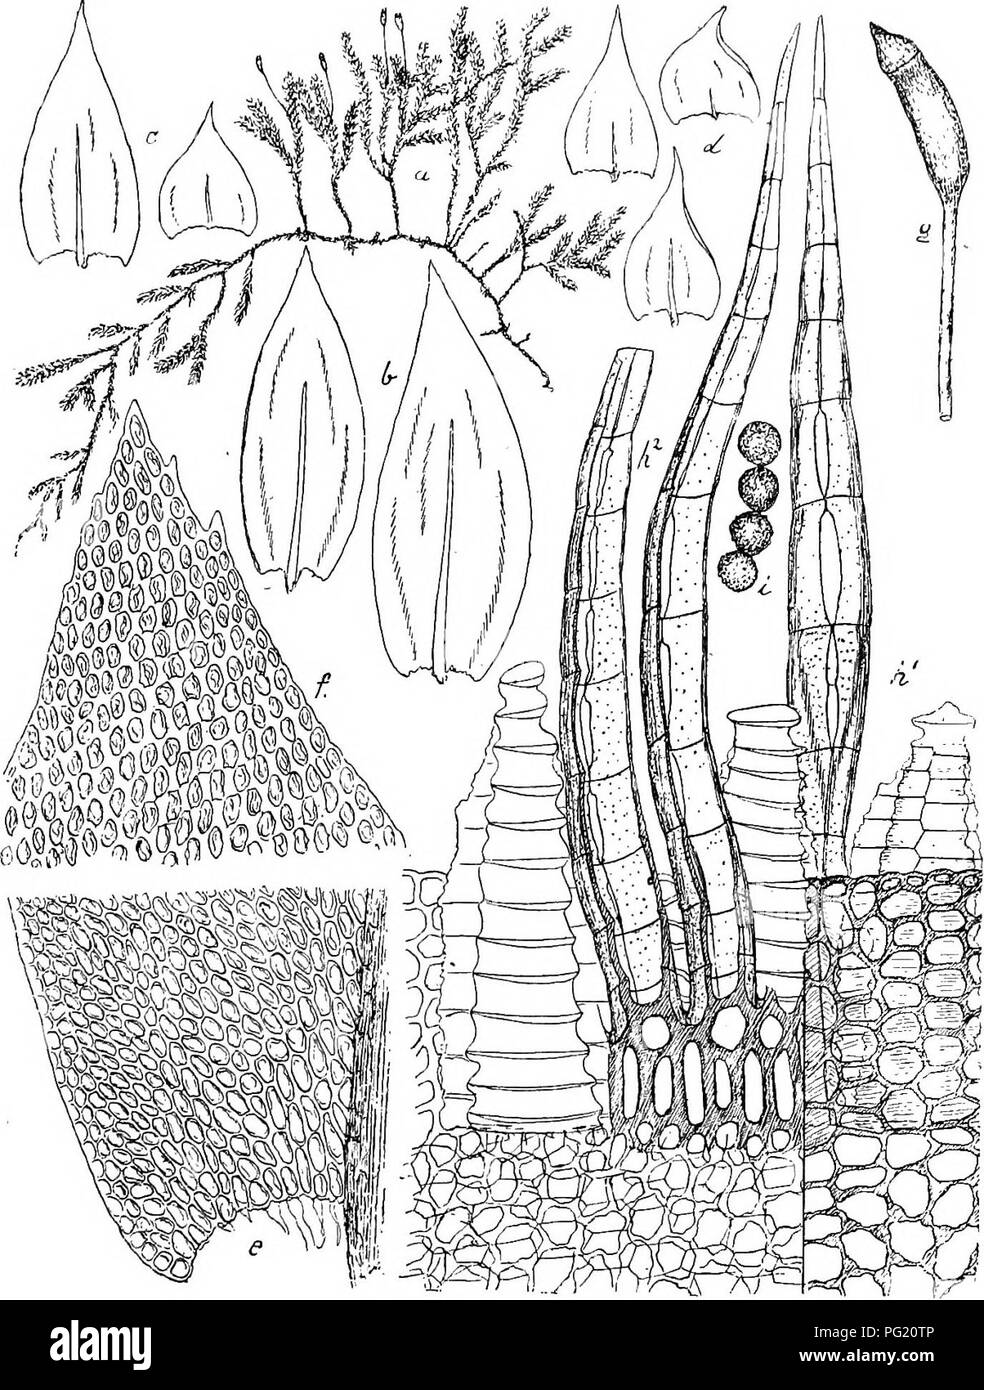 . Flore de Buitenzorg. Botany. 1491 mtodung sitzt, Fortsatze zusammenneigend, lanzettlich, laug zugespitzt, scharf kielfaltig, in der Kiellinie ritzenformig durch- Fig. 236.. a. Habitusbild (nat. Grosse). 6. Obere Astblatter °. e. Untew Astblatter °. d. Stengelbliitler Y- c. Blattgrund ^i. serrulatus Lac. /. Blattspitze if2. g. Sporogon i. h. Peristom dorsal A'. Dasselbe veatral i. Sporen if2. brochen, glatt. Sporen grfln, 20—25 /j. gross, kngelig, grob papillos. Reife im April.. Please note that these images are extracted from scanned page images that may have been digitally enhanced for re Stock Photo